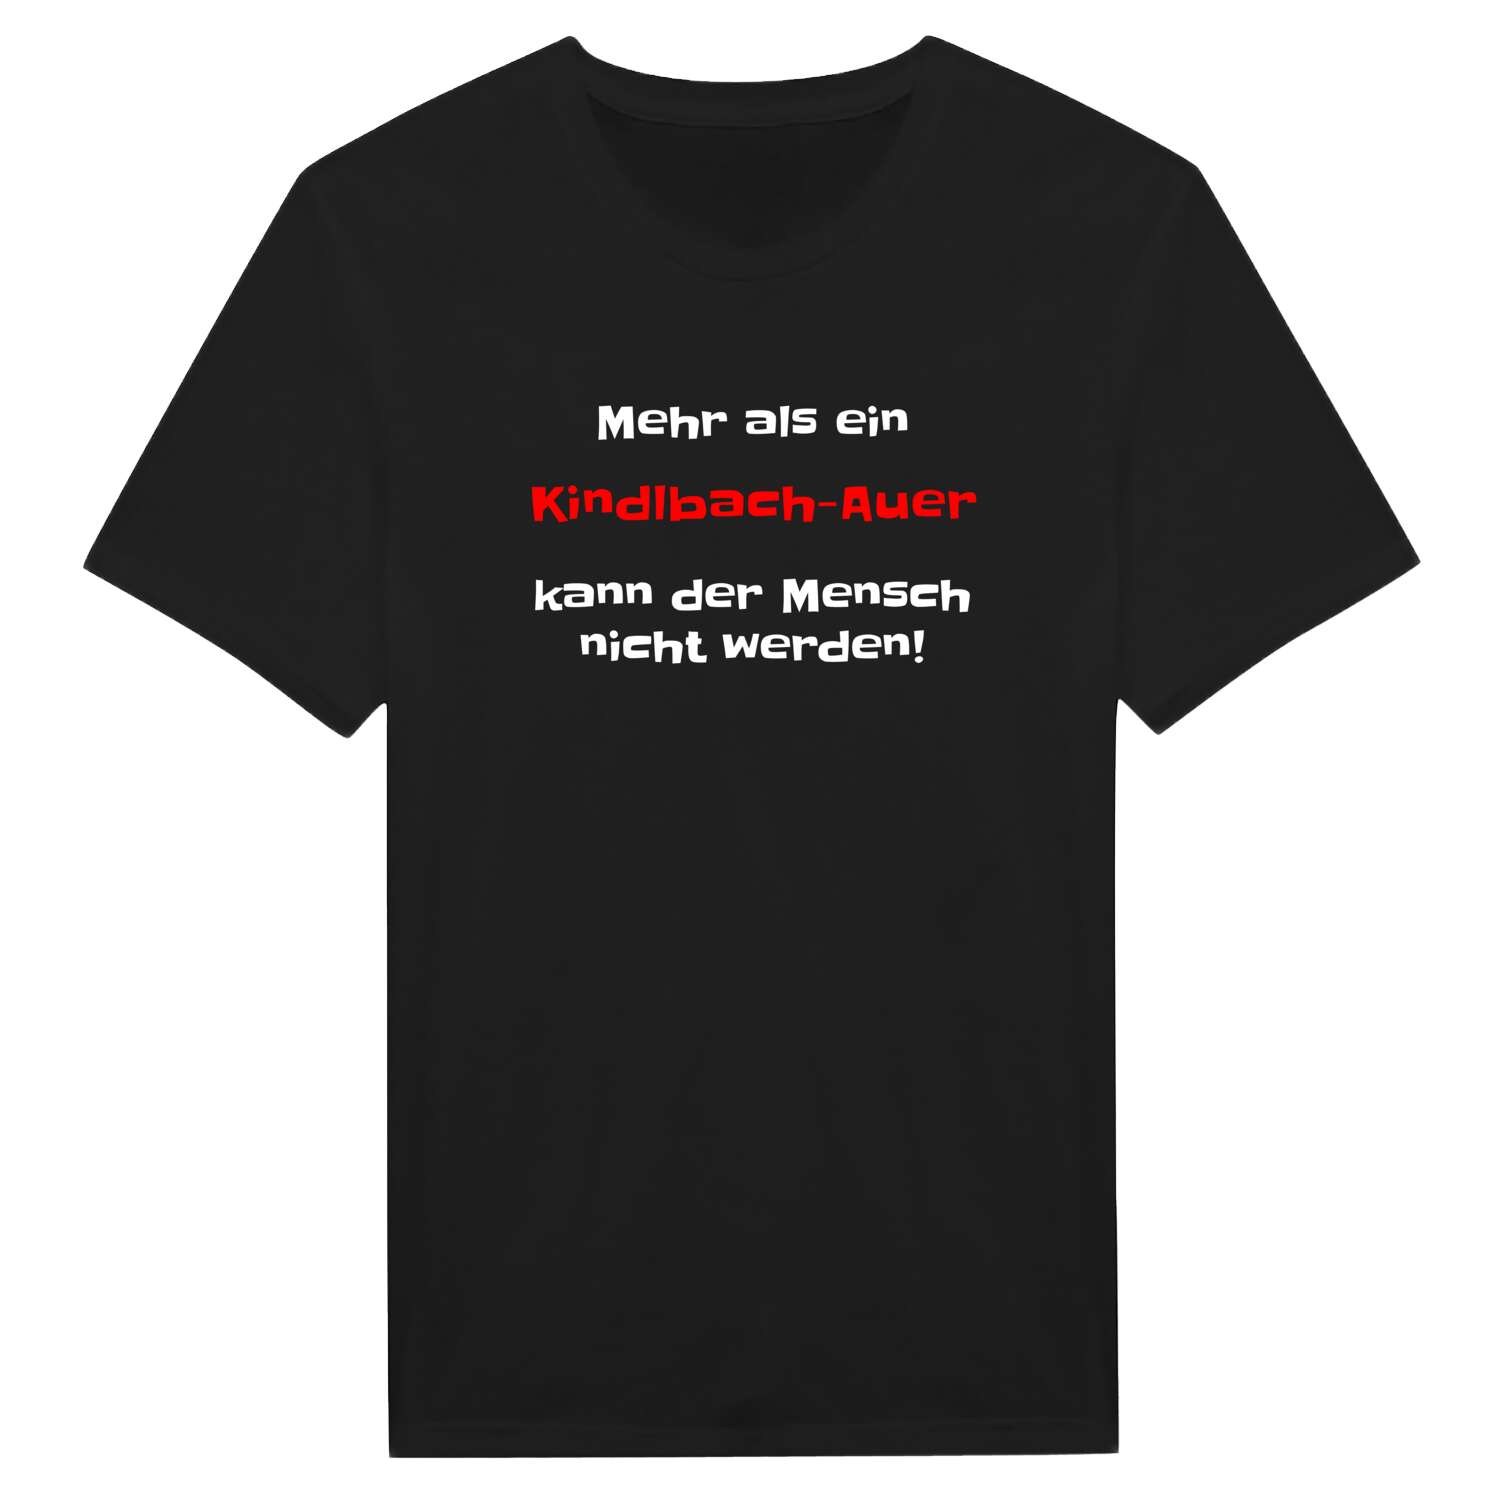 Kindlbach-Au T-Shirt »Mehr als ein«